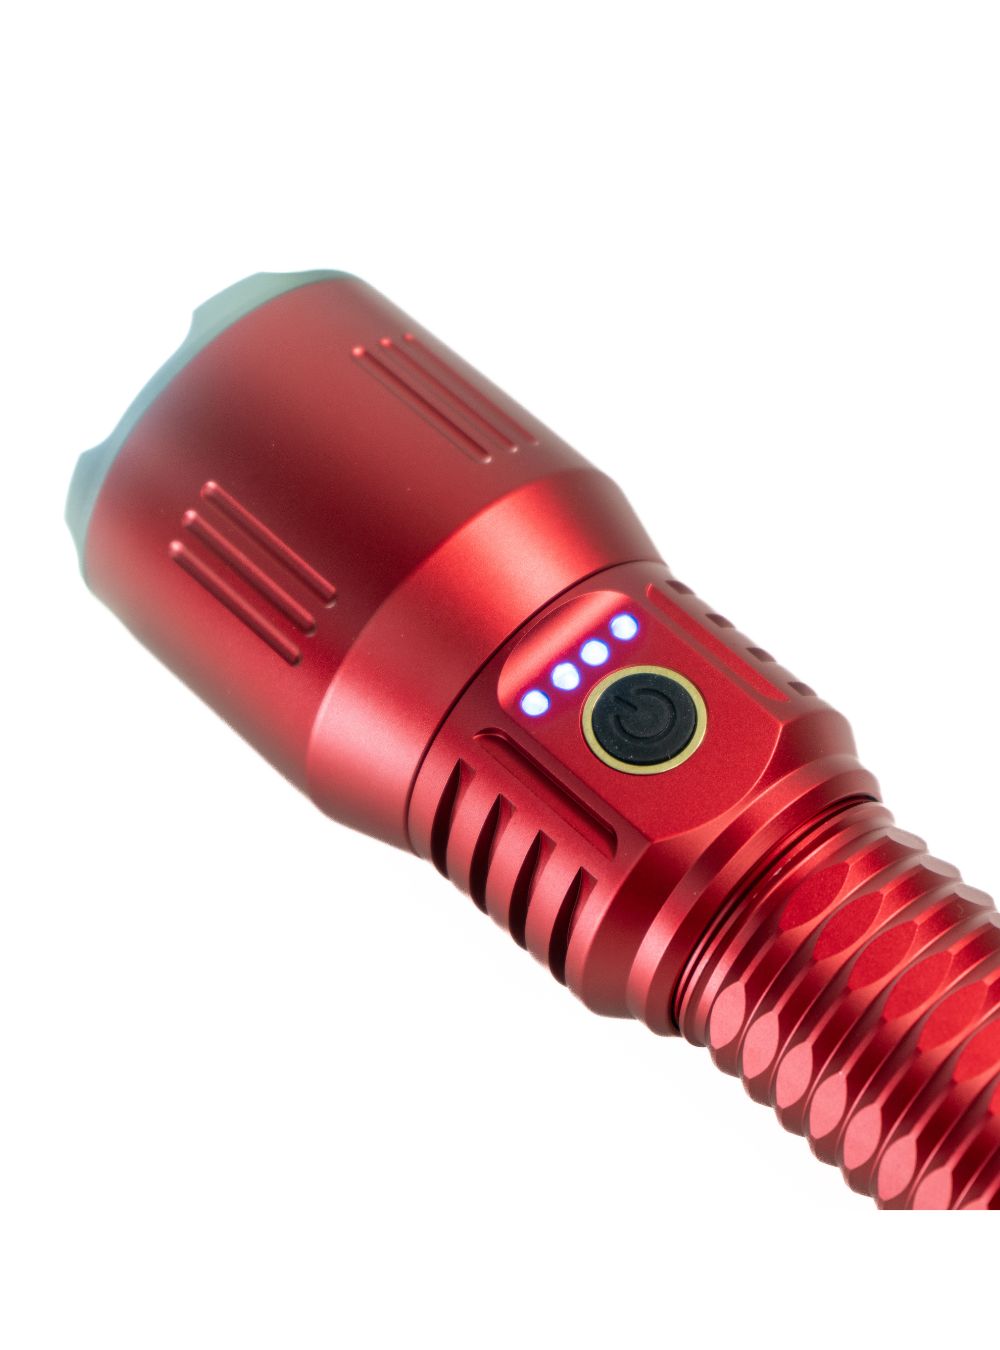 LumineX Ultrabeam Flashlight